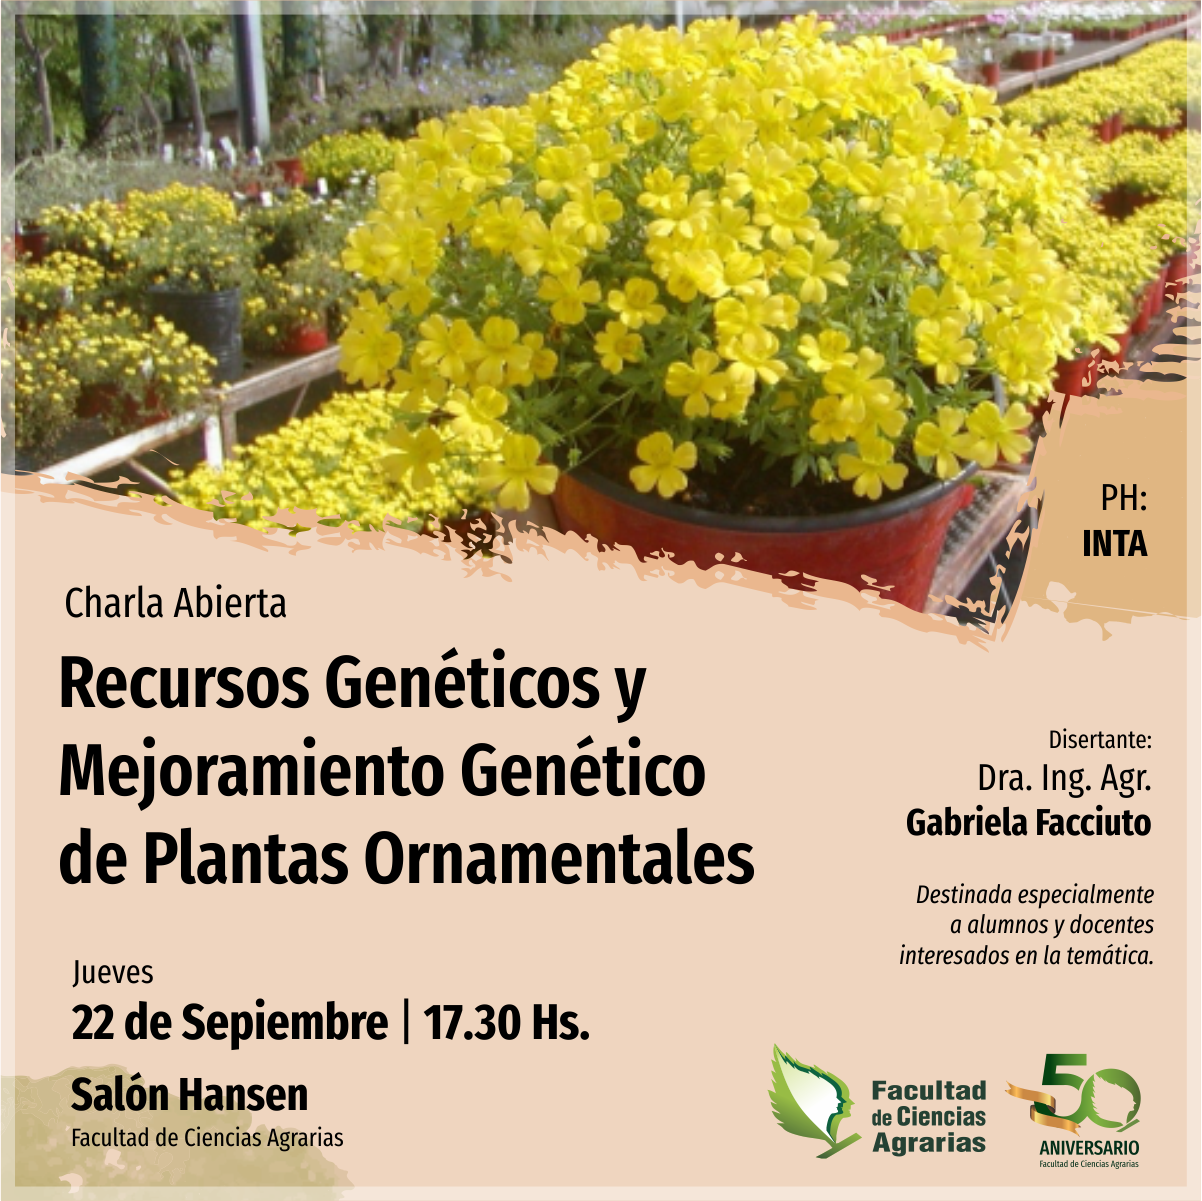 Brindarán charla sobre Recursos Genéticos y Mejoramiento Genético de Plantas Ornamentales